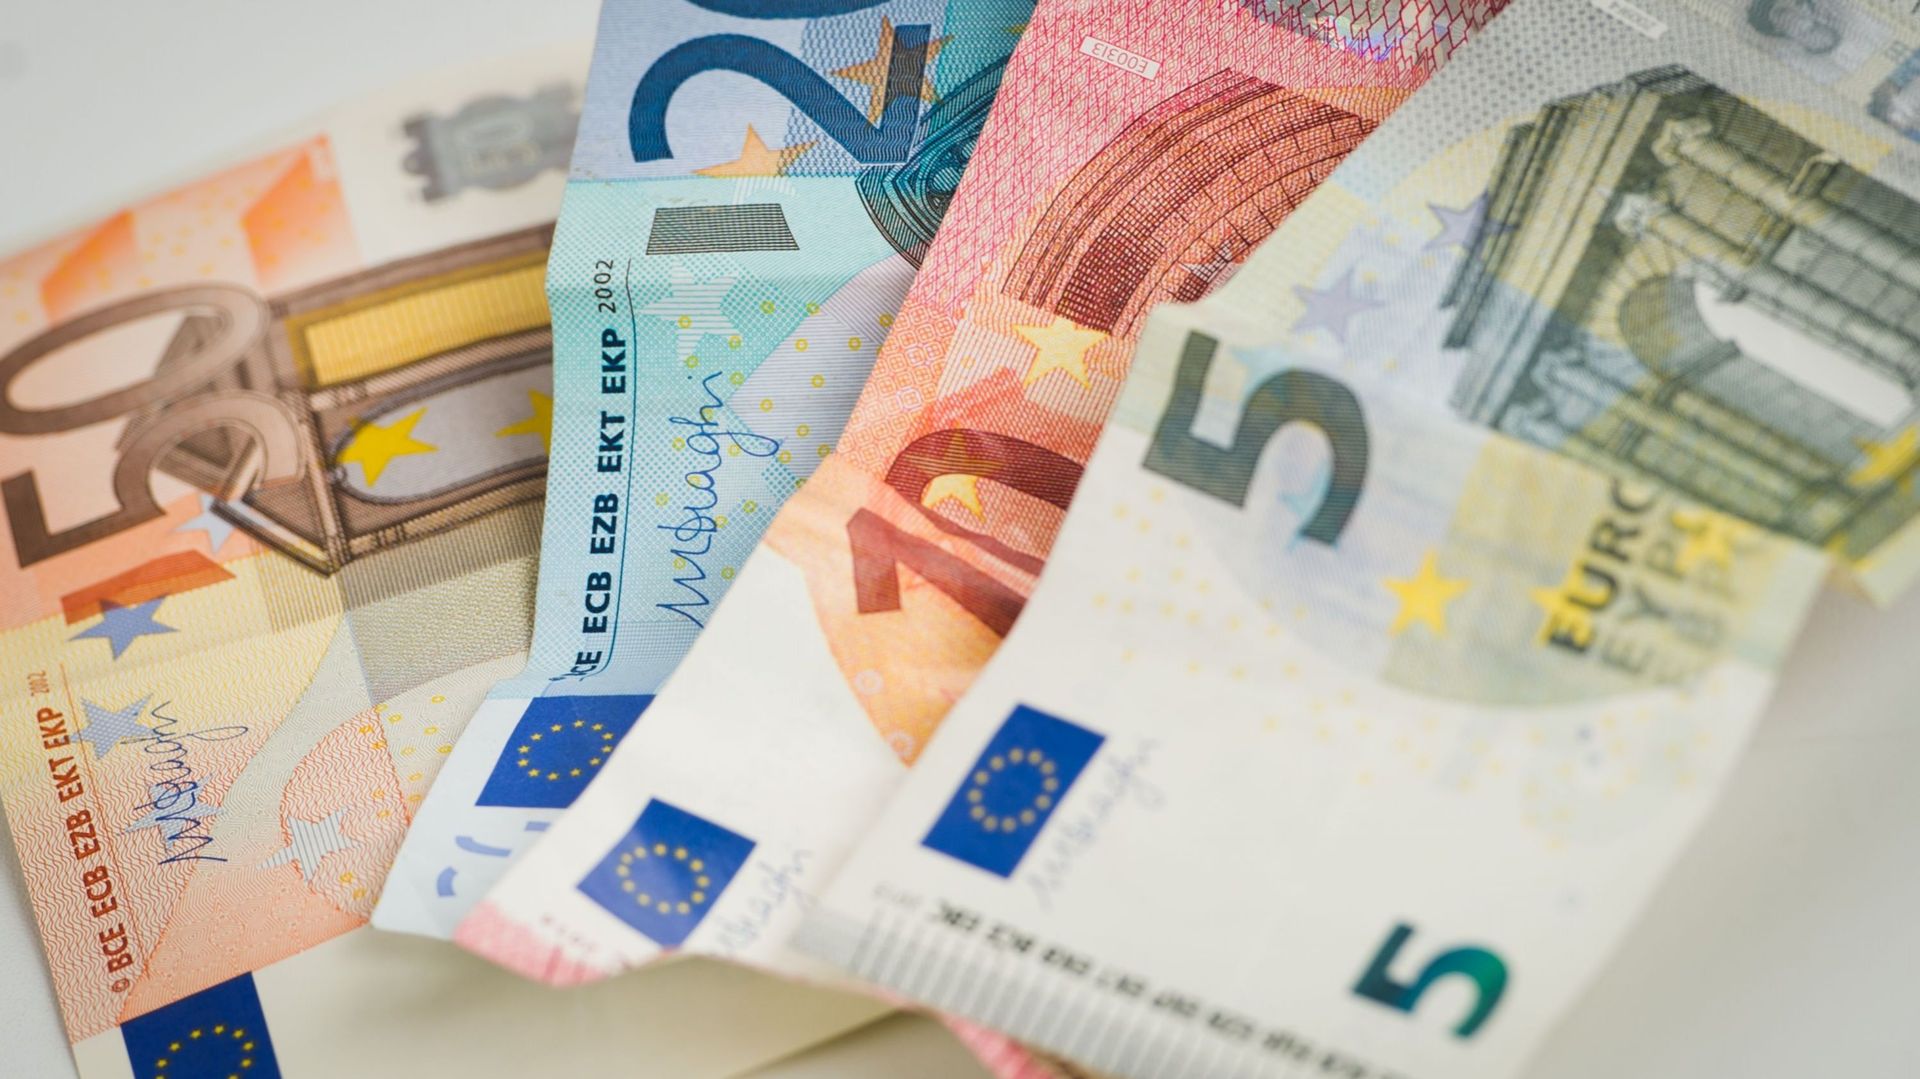 salaire-minimum-les-etats-membres-et-le-parlement-europeen-vont-negocier-un-cadre